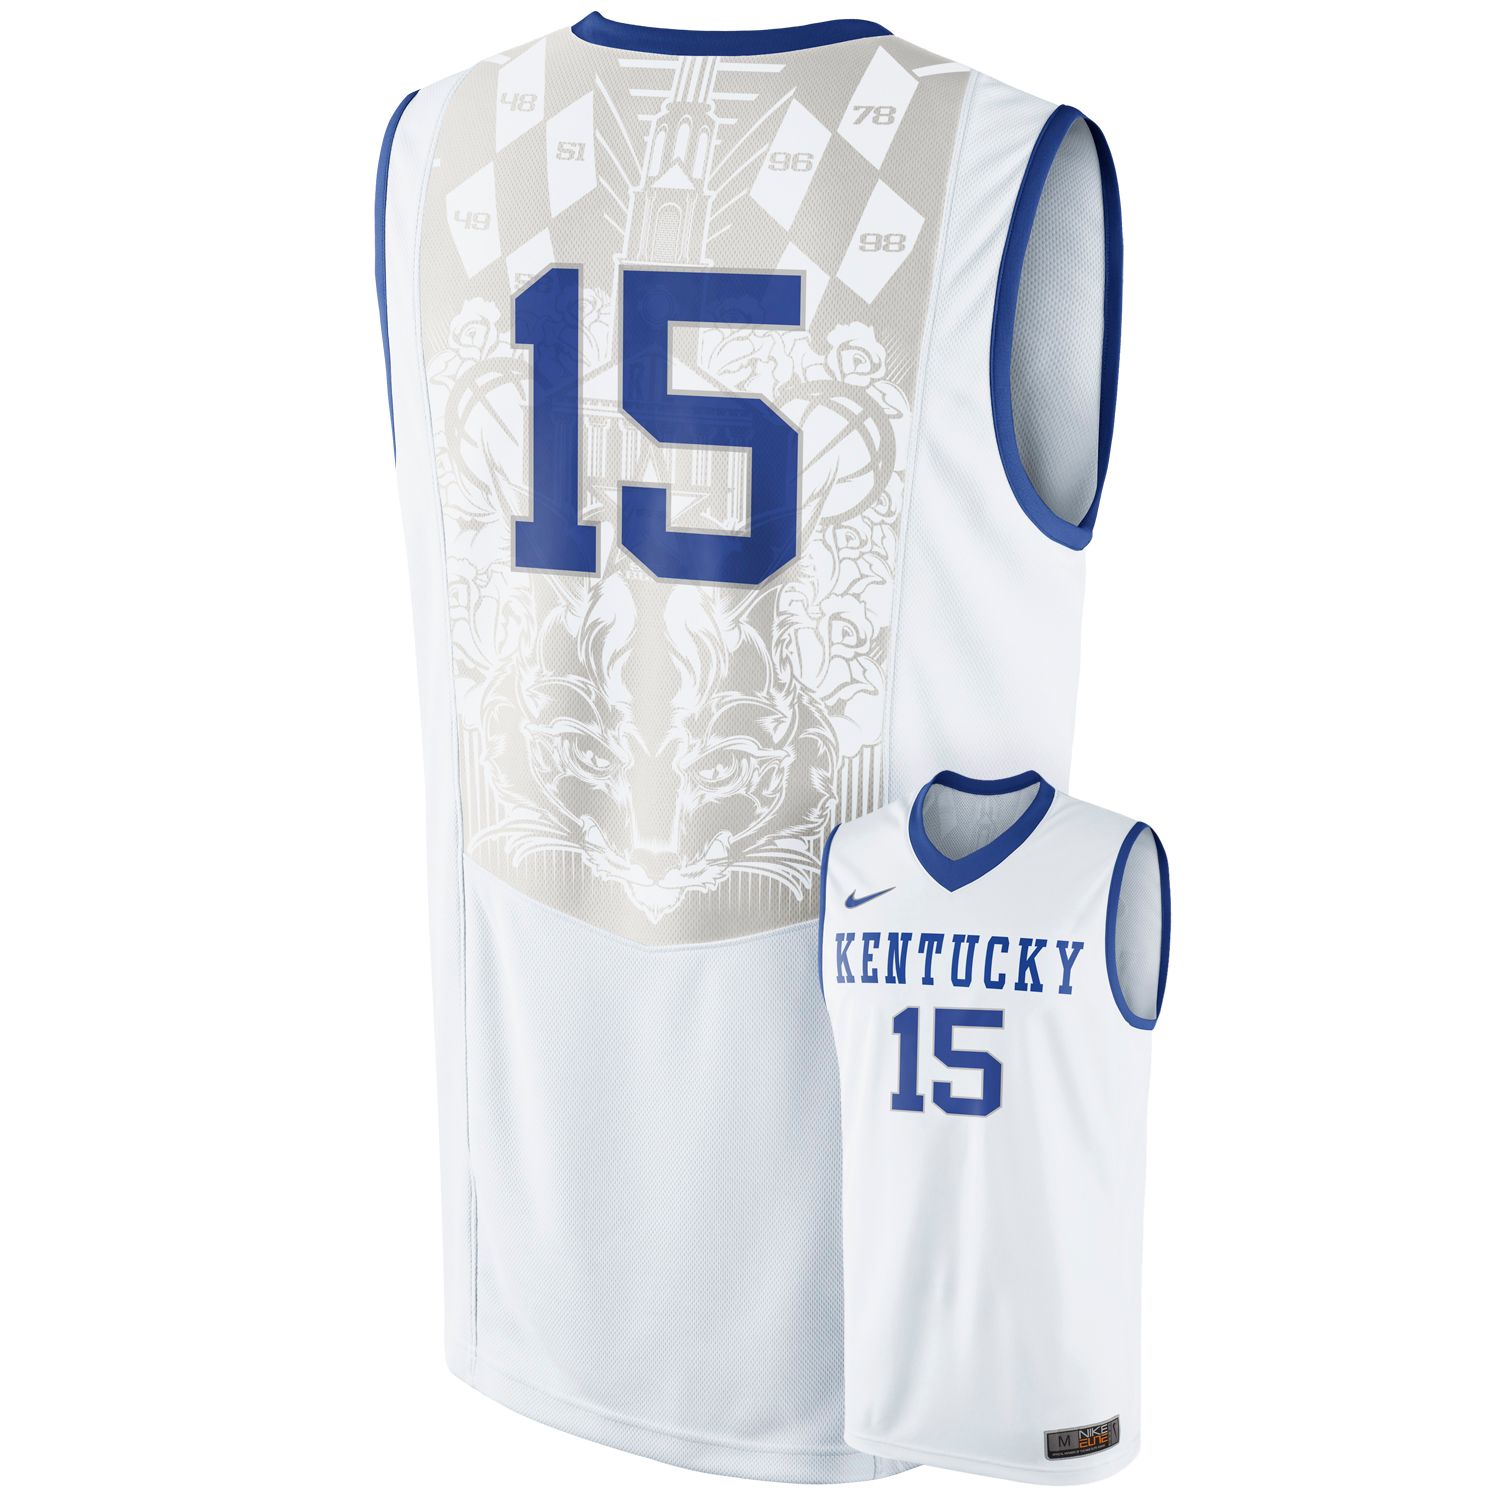 kentucky basketball jersey